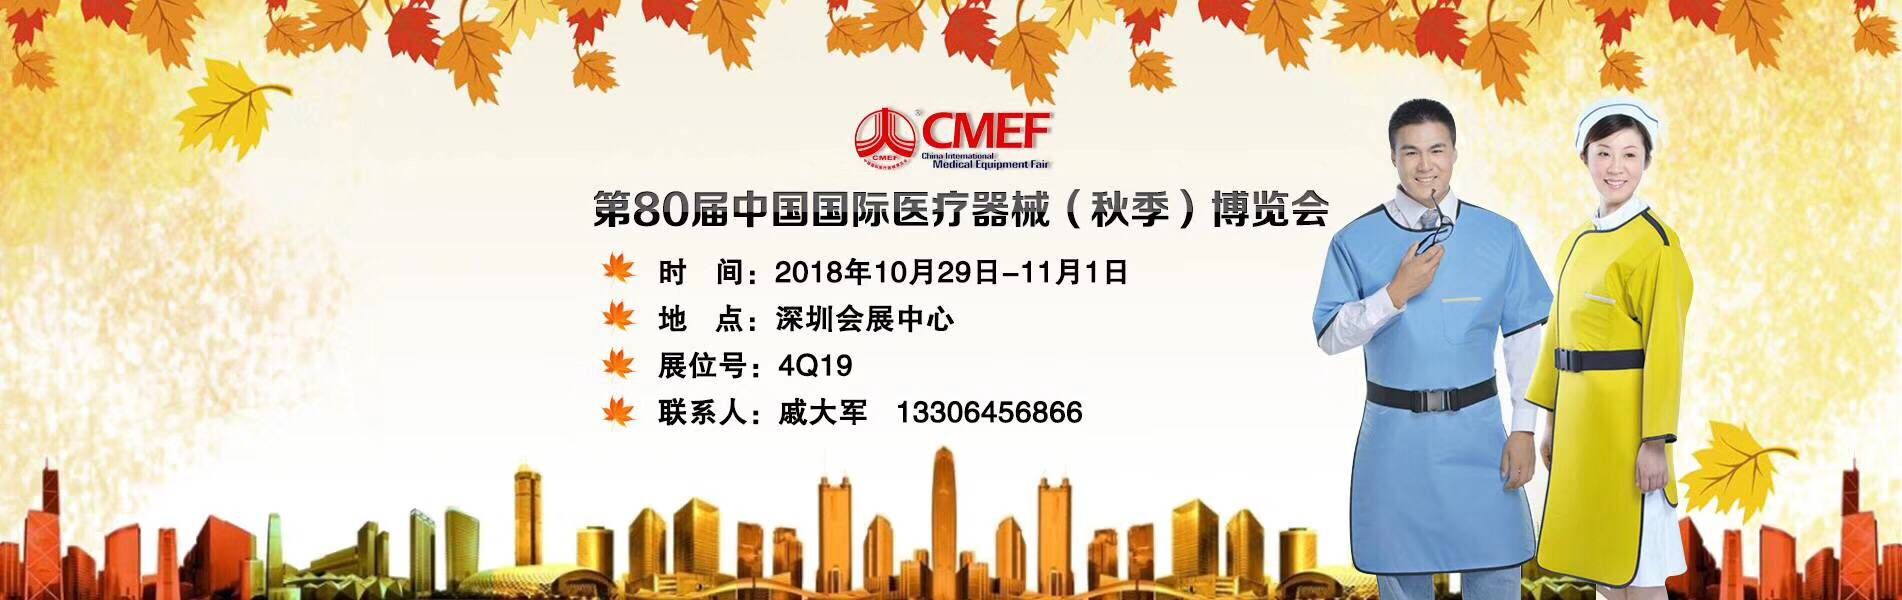 第80届中国国际医疗器械（秋季）博览会（cmef）”暨“第27届中国国际医疗器械设计与制造技术展览会(icmd)”隆重举行